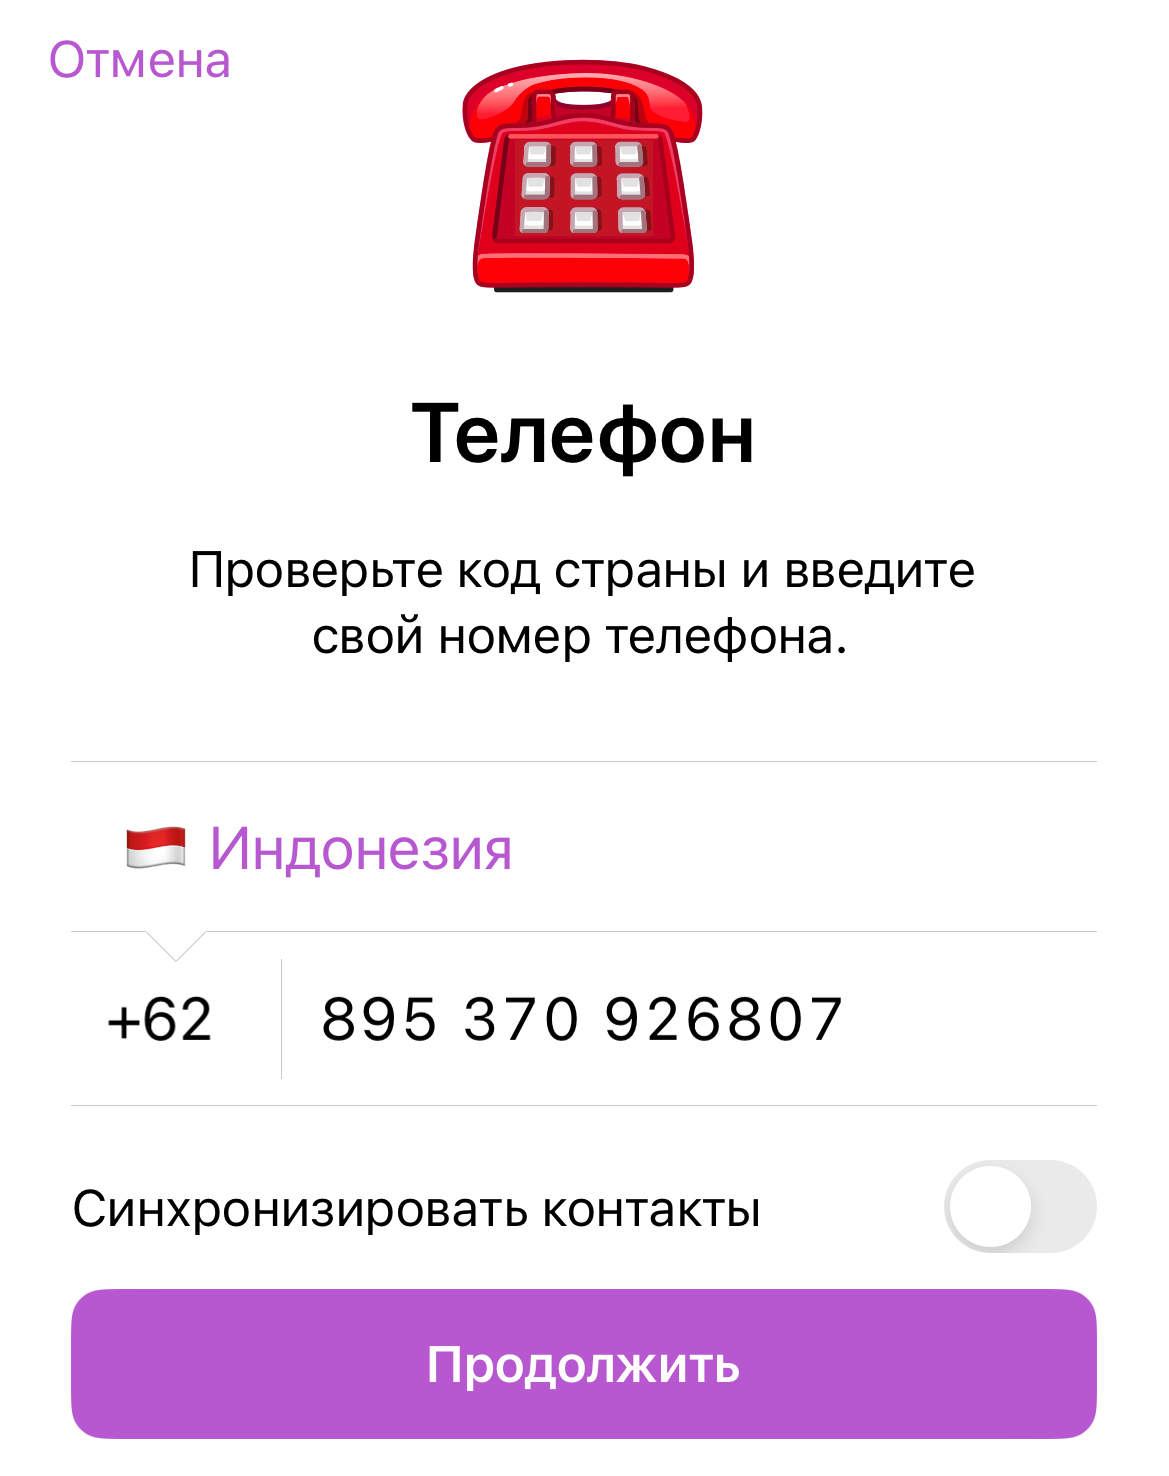 Зарегистрироваться на телеграмм бесплатно русском языке телефон без регистрации фото 72